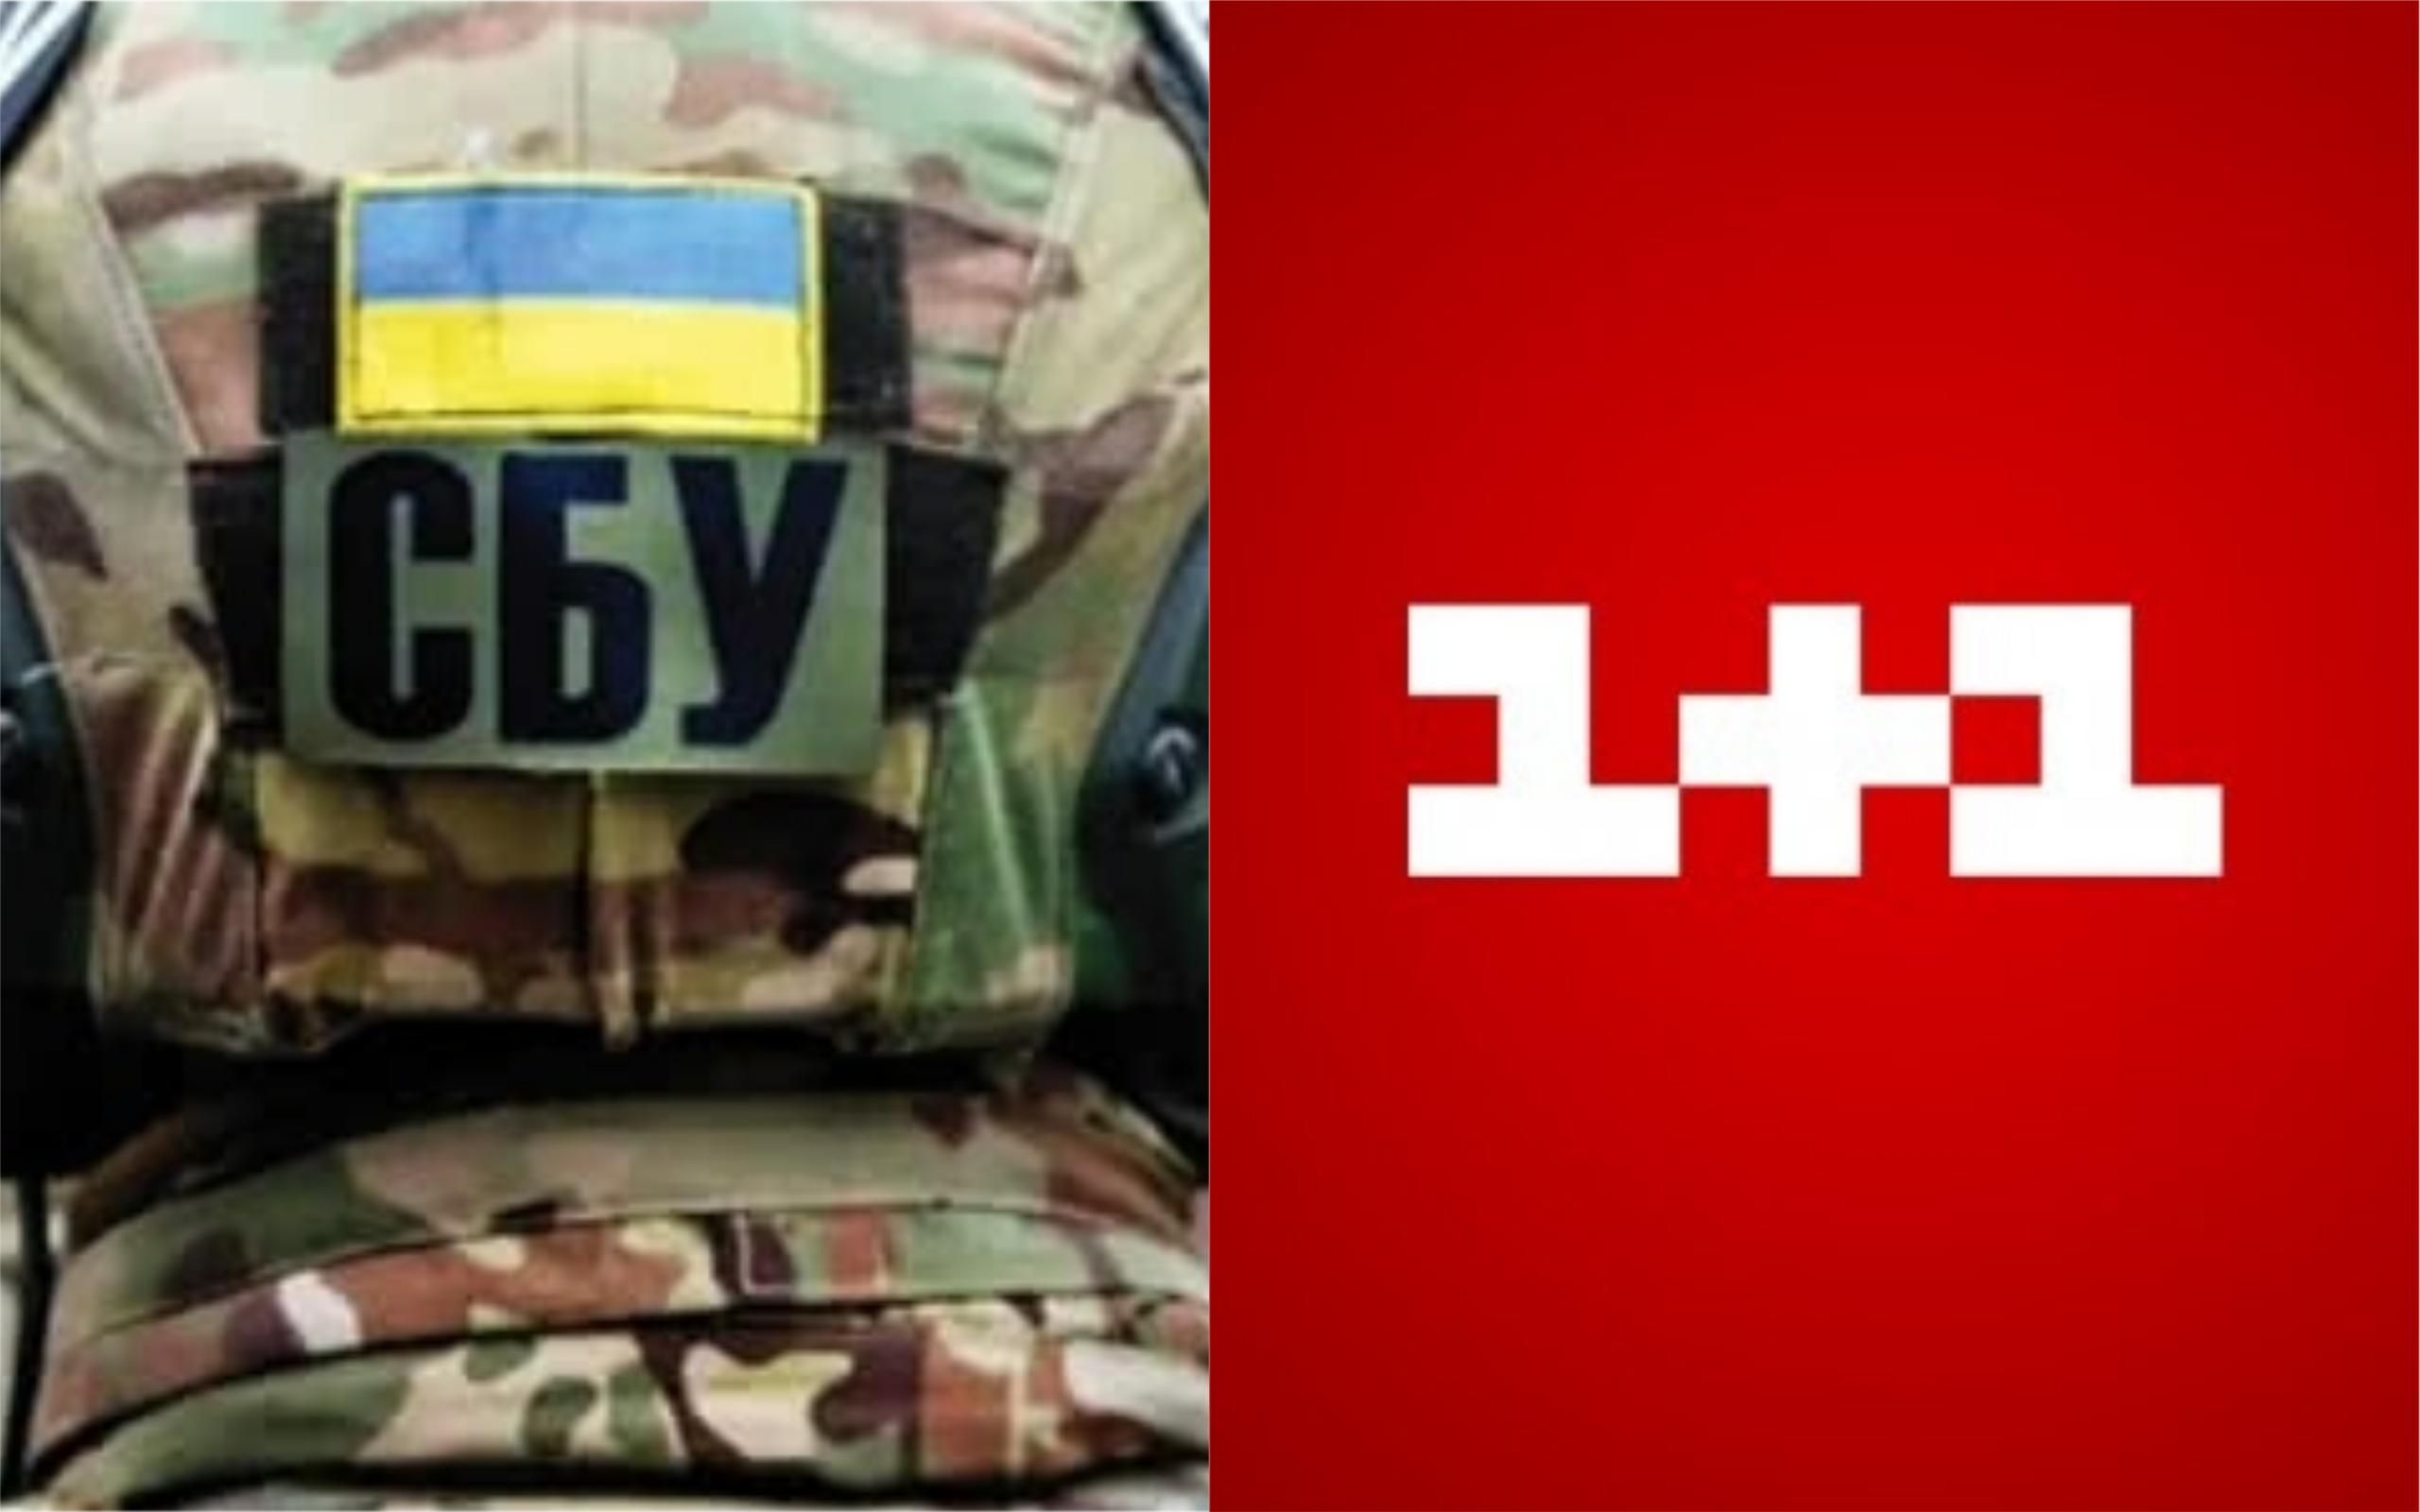 СБУ против 1+1: канал опубликовал официальную реакцию на обыски